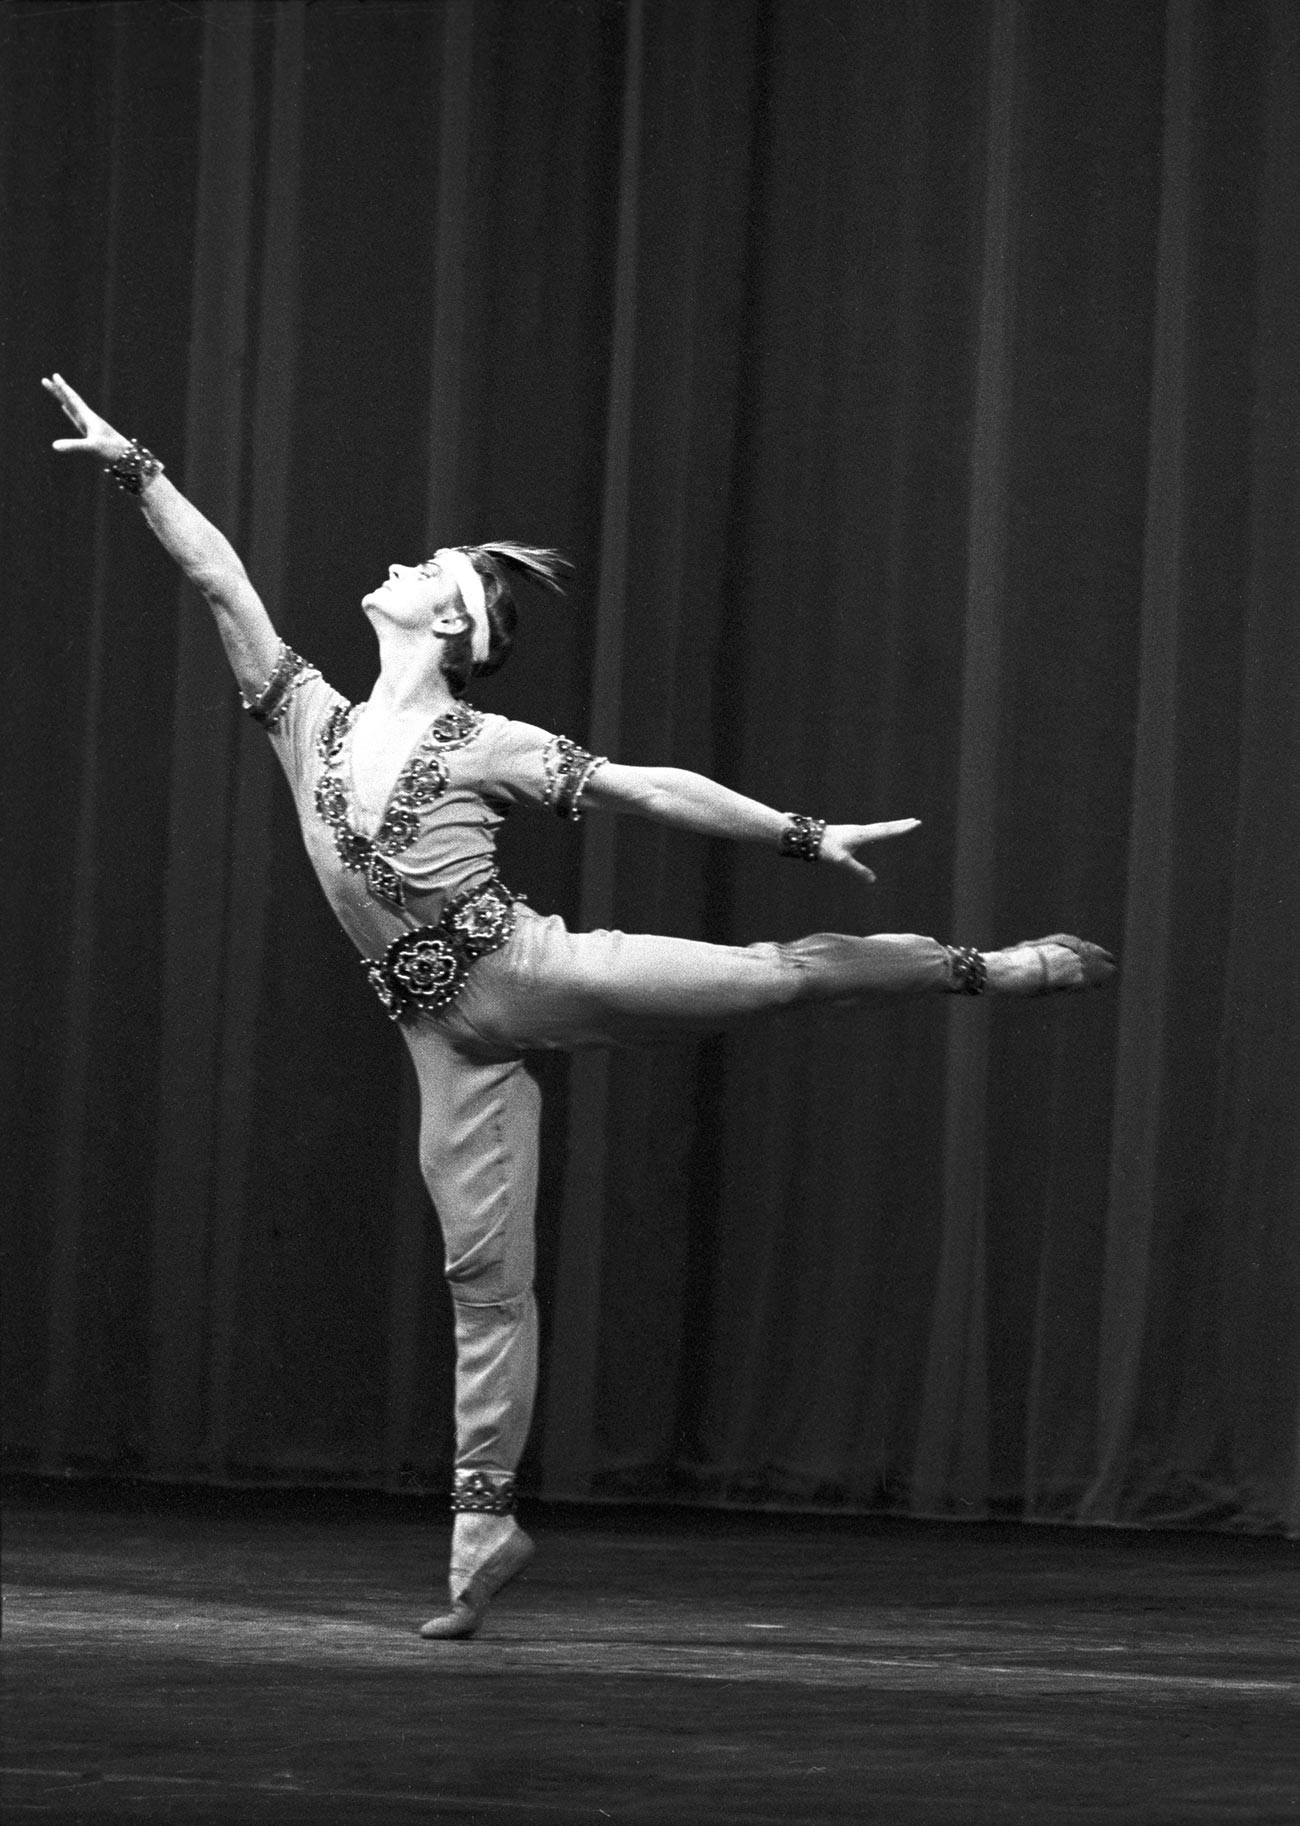 Le danseur de ballet soviétique Mikhaïl Barychnikov sur la scène théâtre Kirov (aujourd'hui le théâtre Mariinsky) interprète une partie solo dans le ballet Le Corsaire